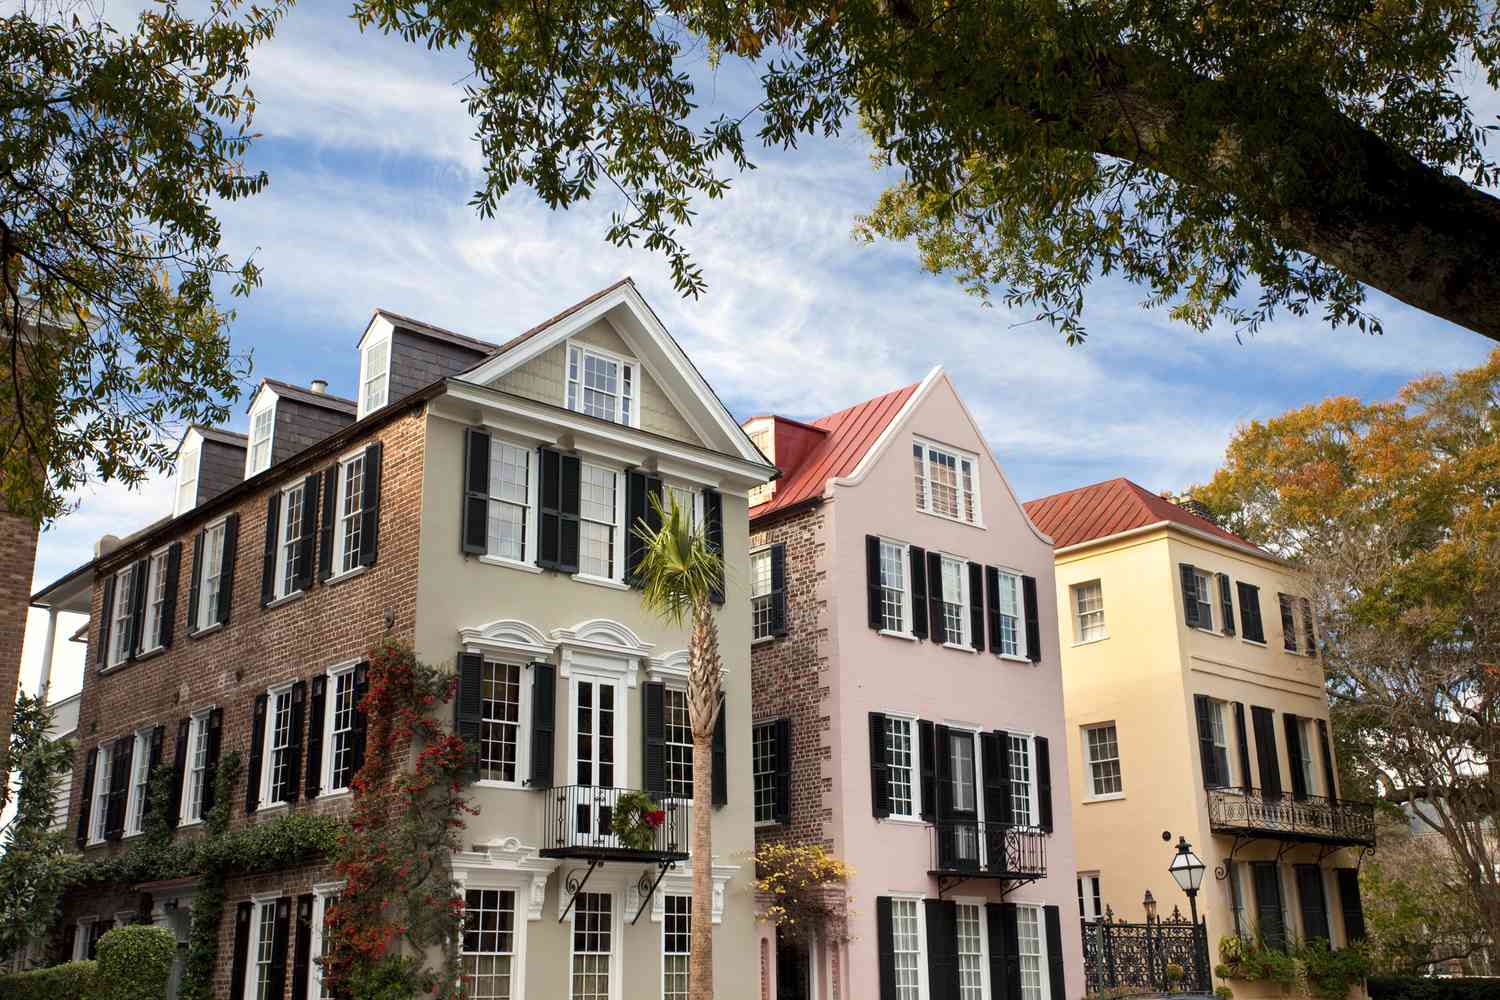 Casas geminadas de Charleston com paredes pintadas e de tijolos